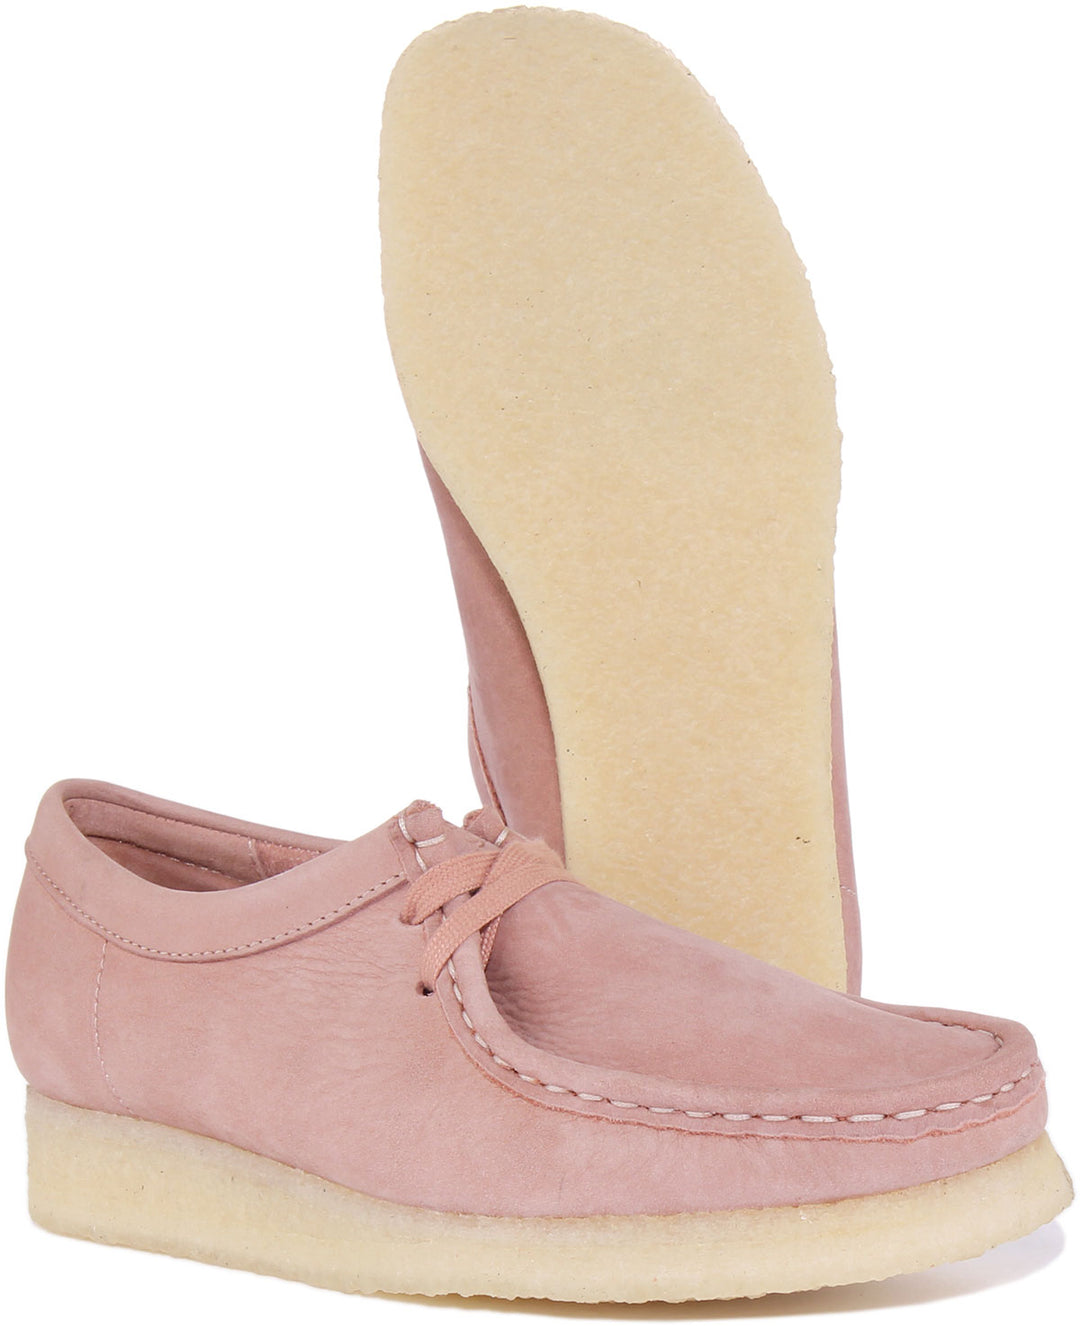 Clarks Originals Wallabee Zapatos de piel con cordones para mujer en rosa